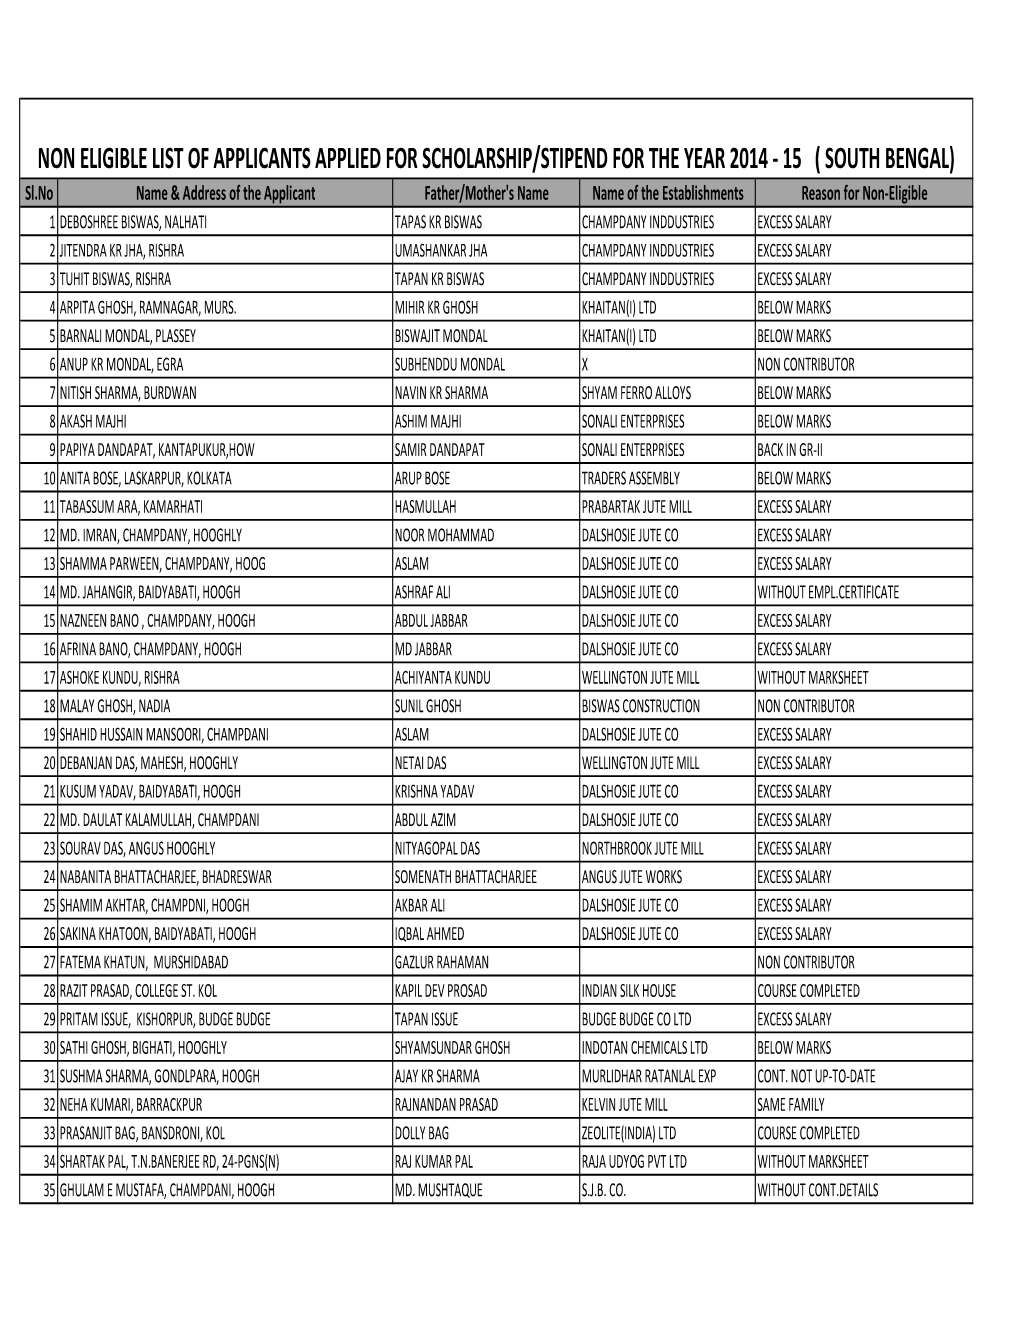 Non-Elegibli List Sch,Sti 2014-15 North Bengal